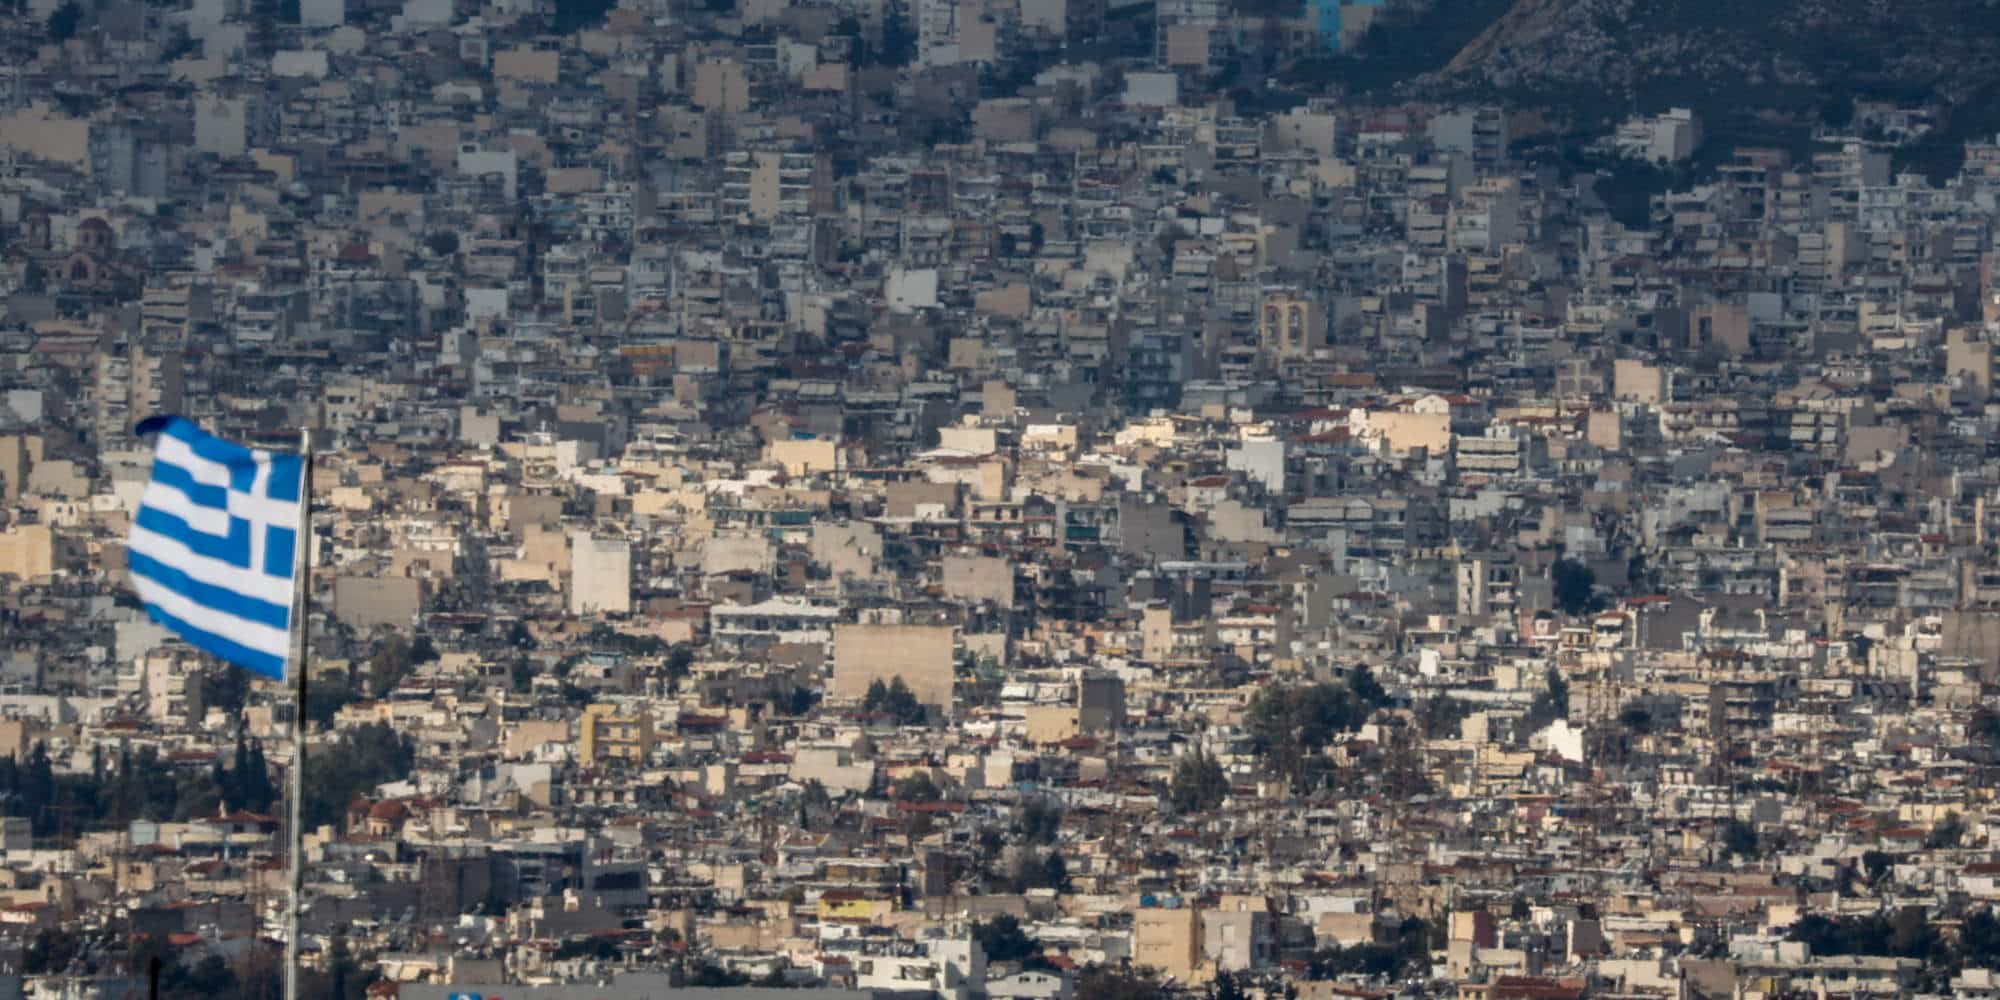 Πανοραμική εικόνα του λεκανοπεδίου στην Αθήνα